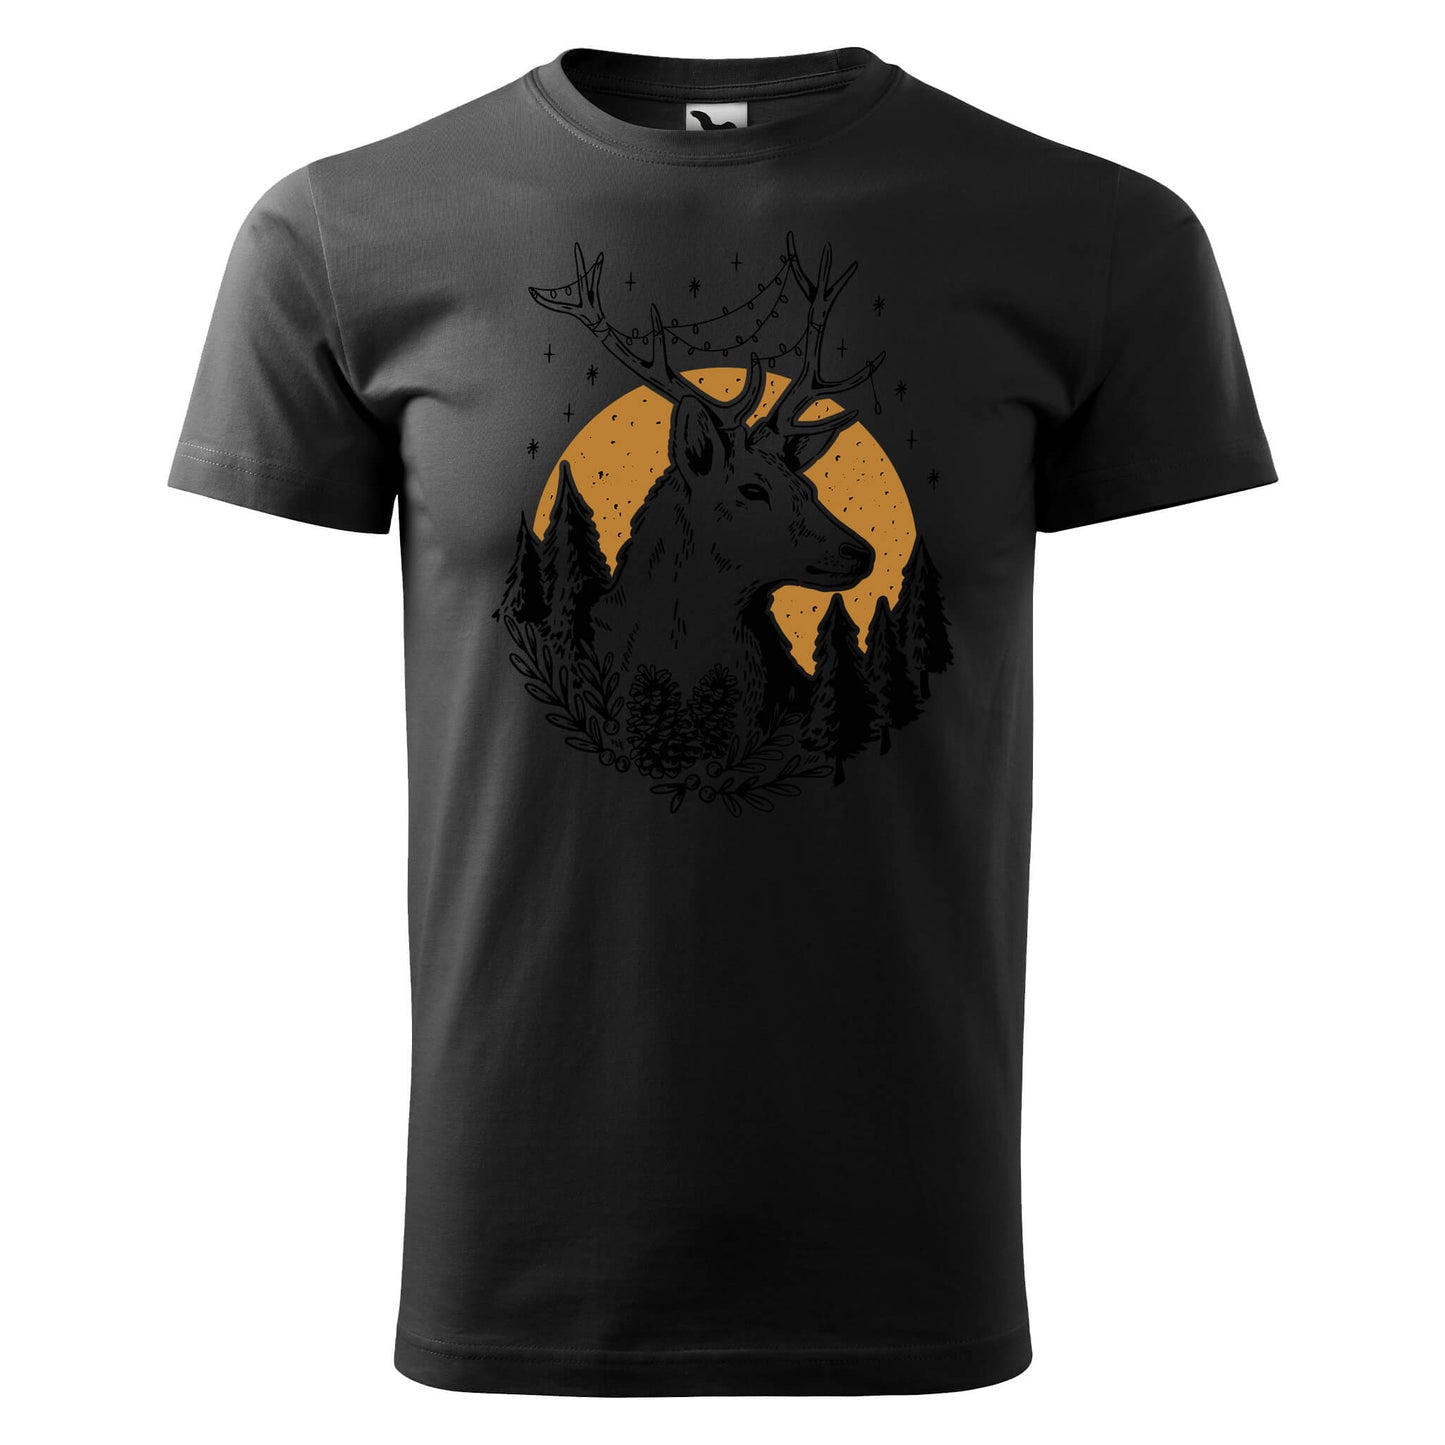 Deer forest t-shirt - rvdesignprint